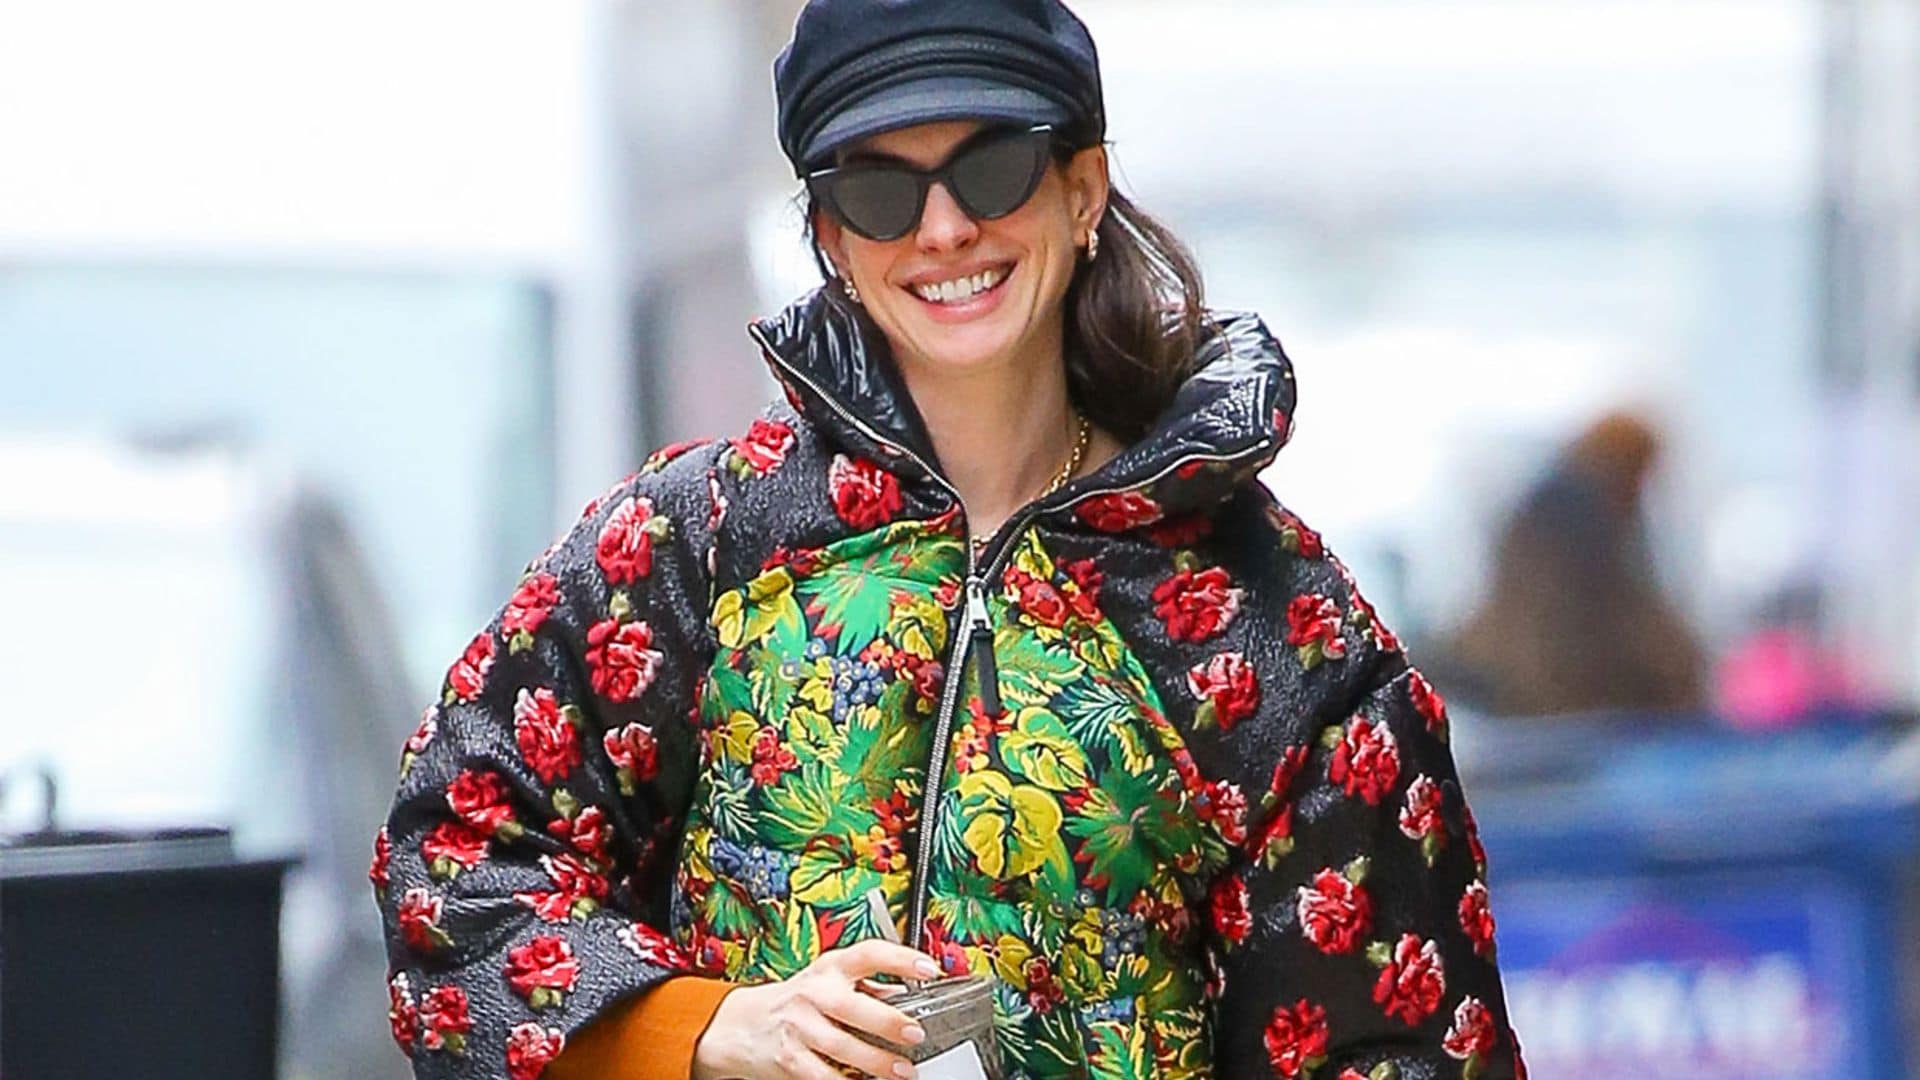 ¿Un abrigo de 3.500 euros para dar un poco de color a un 'look total black'? ¡Anne Hathaway dice que sí!